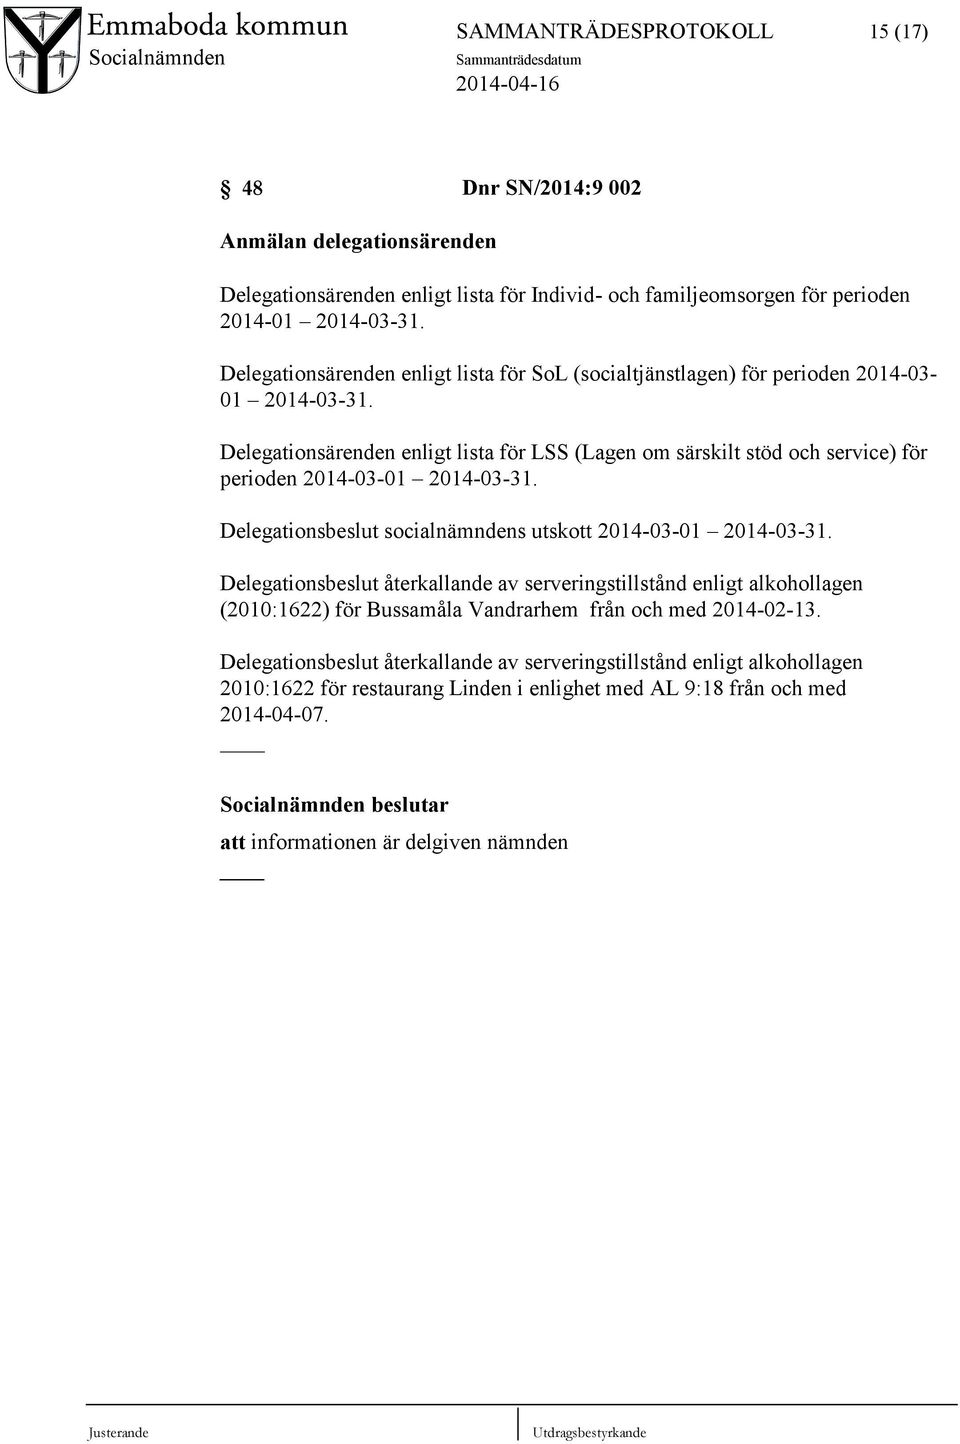 Delegationsärenden enligt lista för LSS (Lagen om särskilt stöd och service) för perioden 2014-03-01 2014-03-31. Delegationsbeslut socialnämndens utskott 2014-03-01 2014-03-31.